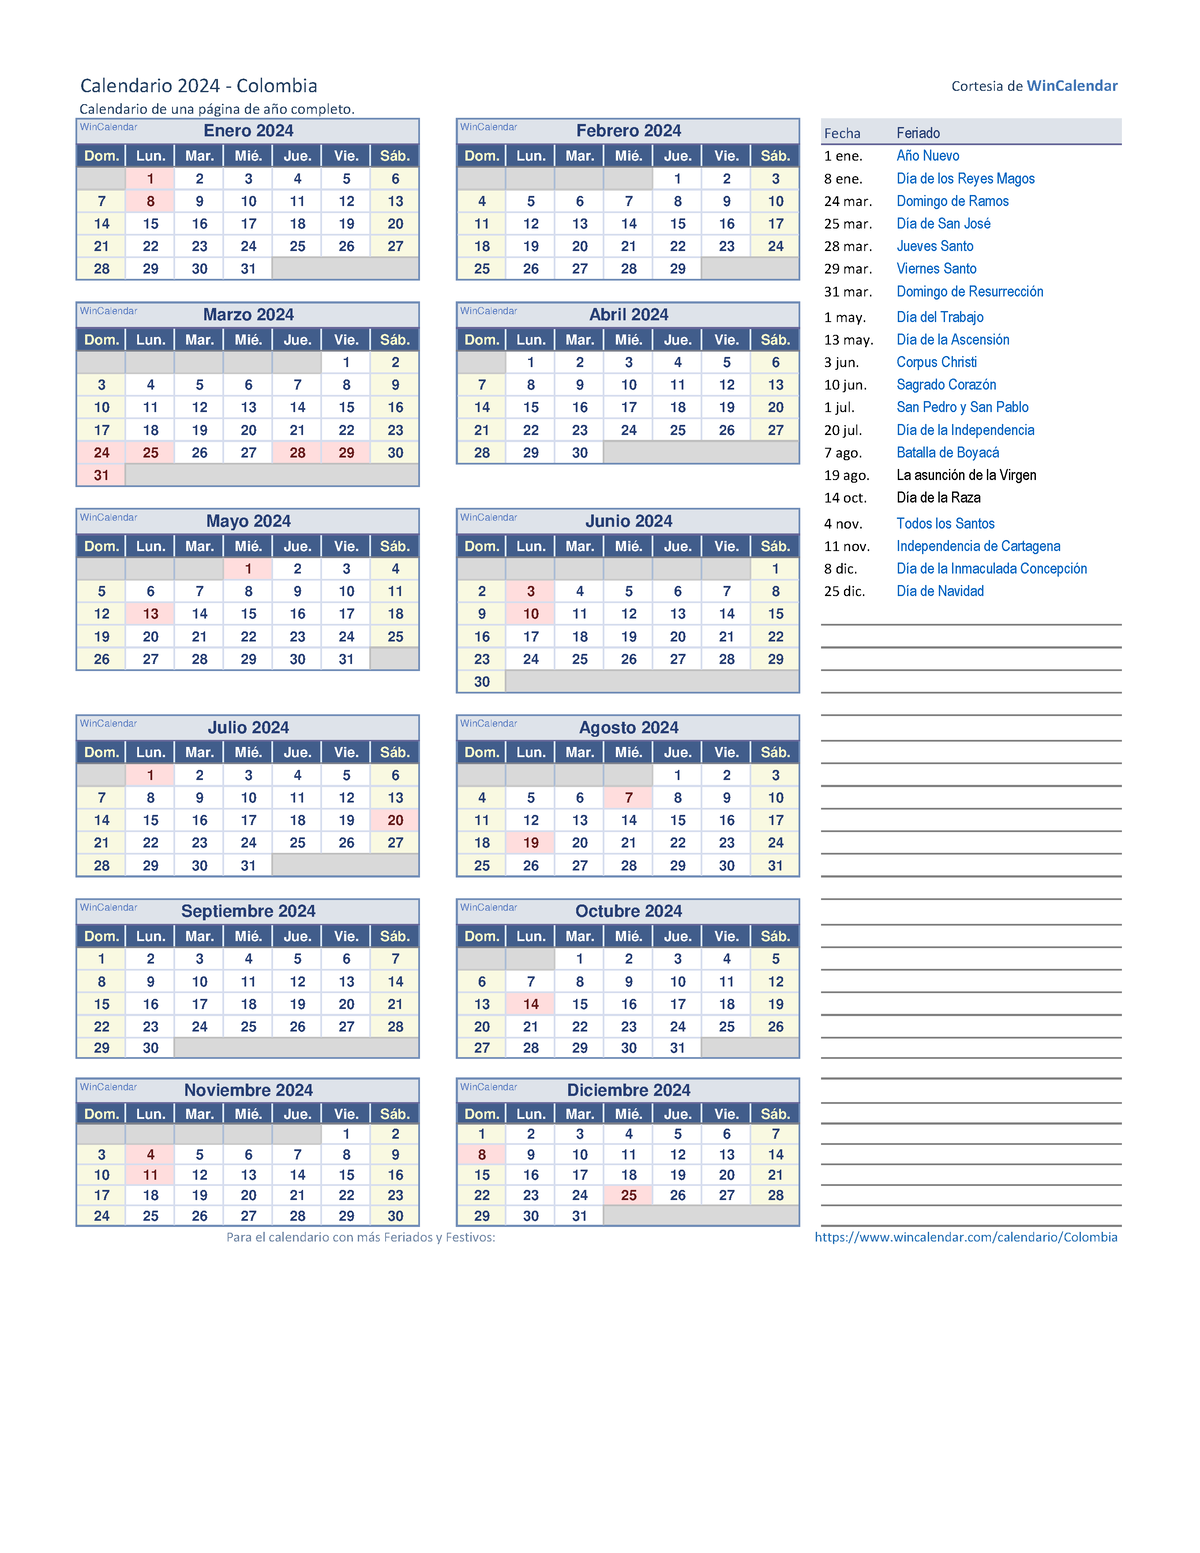 Calendario 2024 una pagina Calendario 2024 Colombia Cortesia de